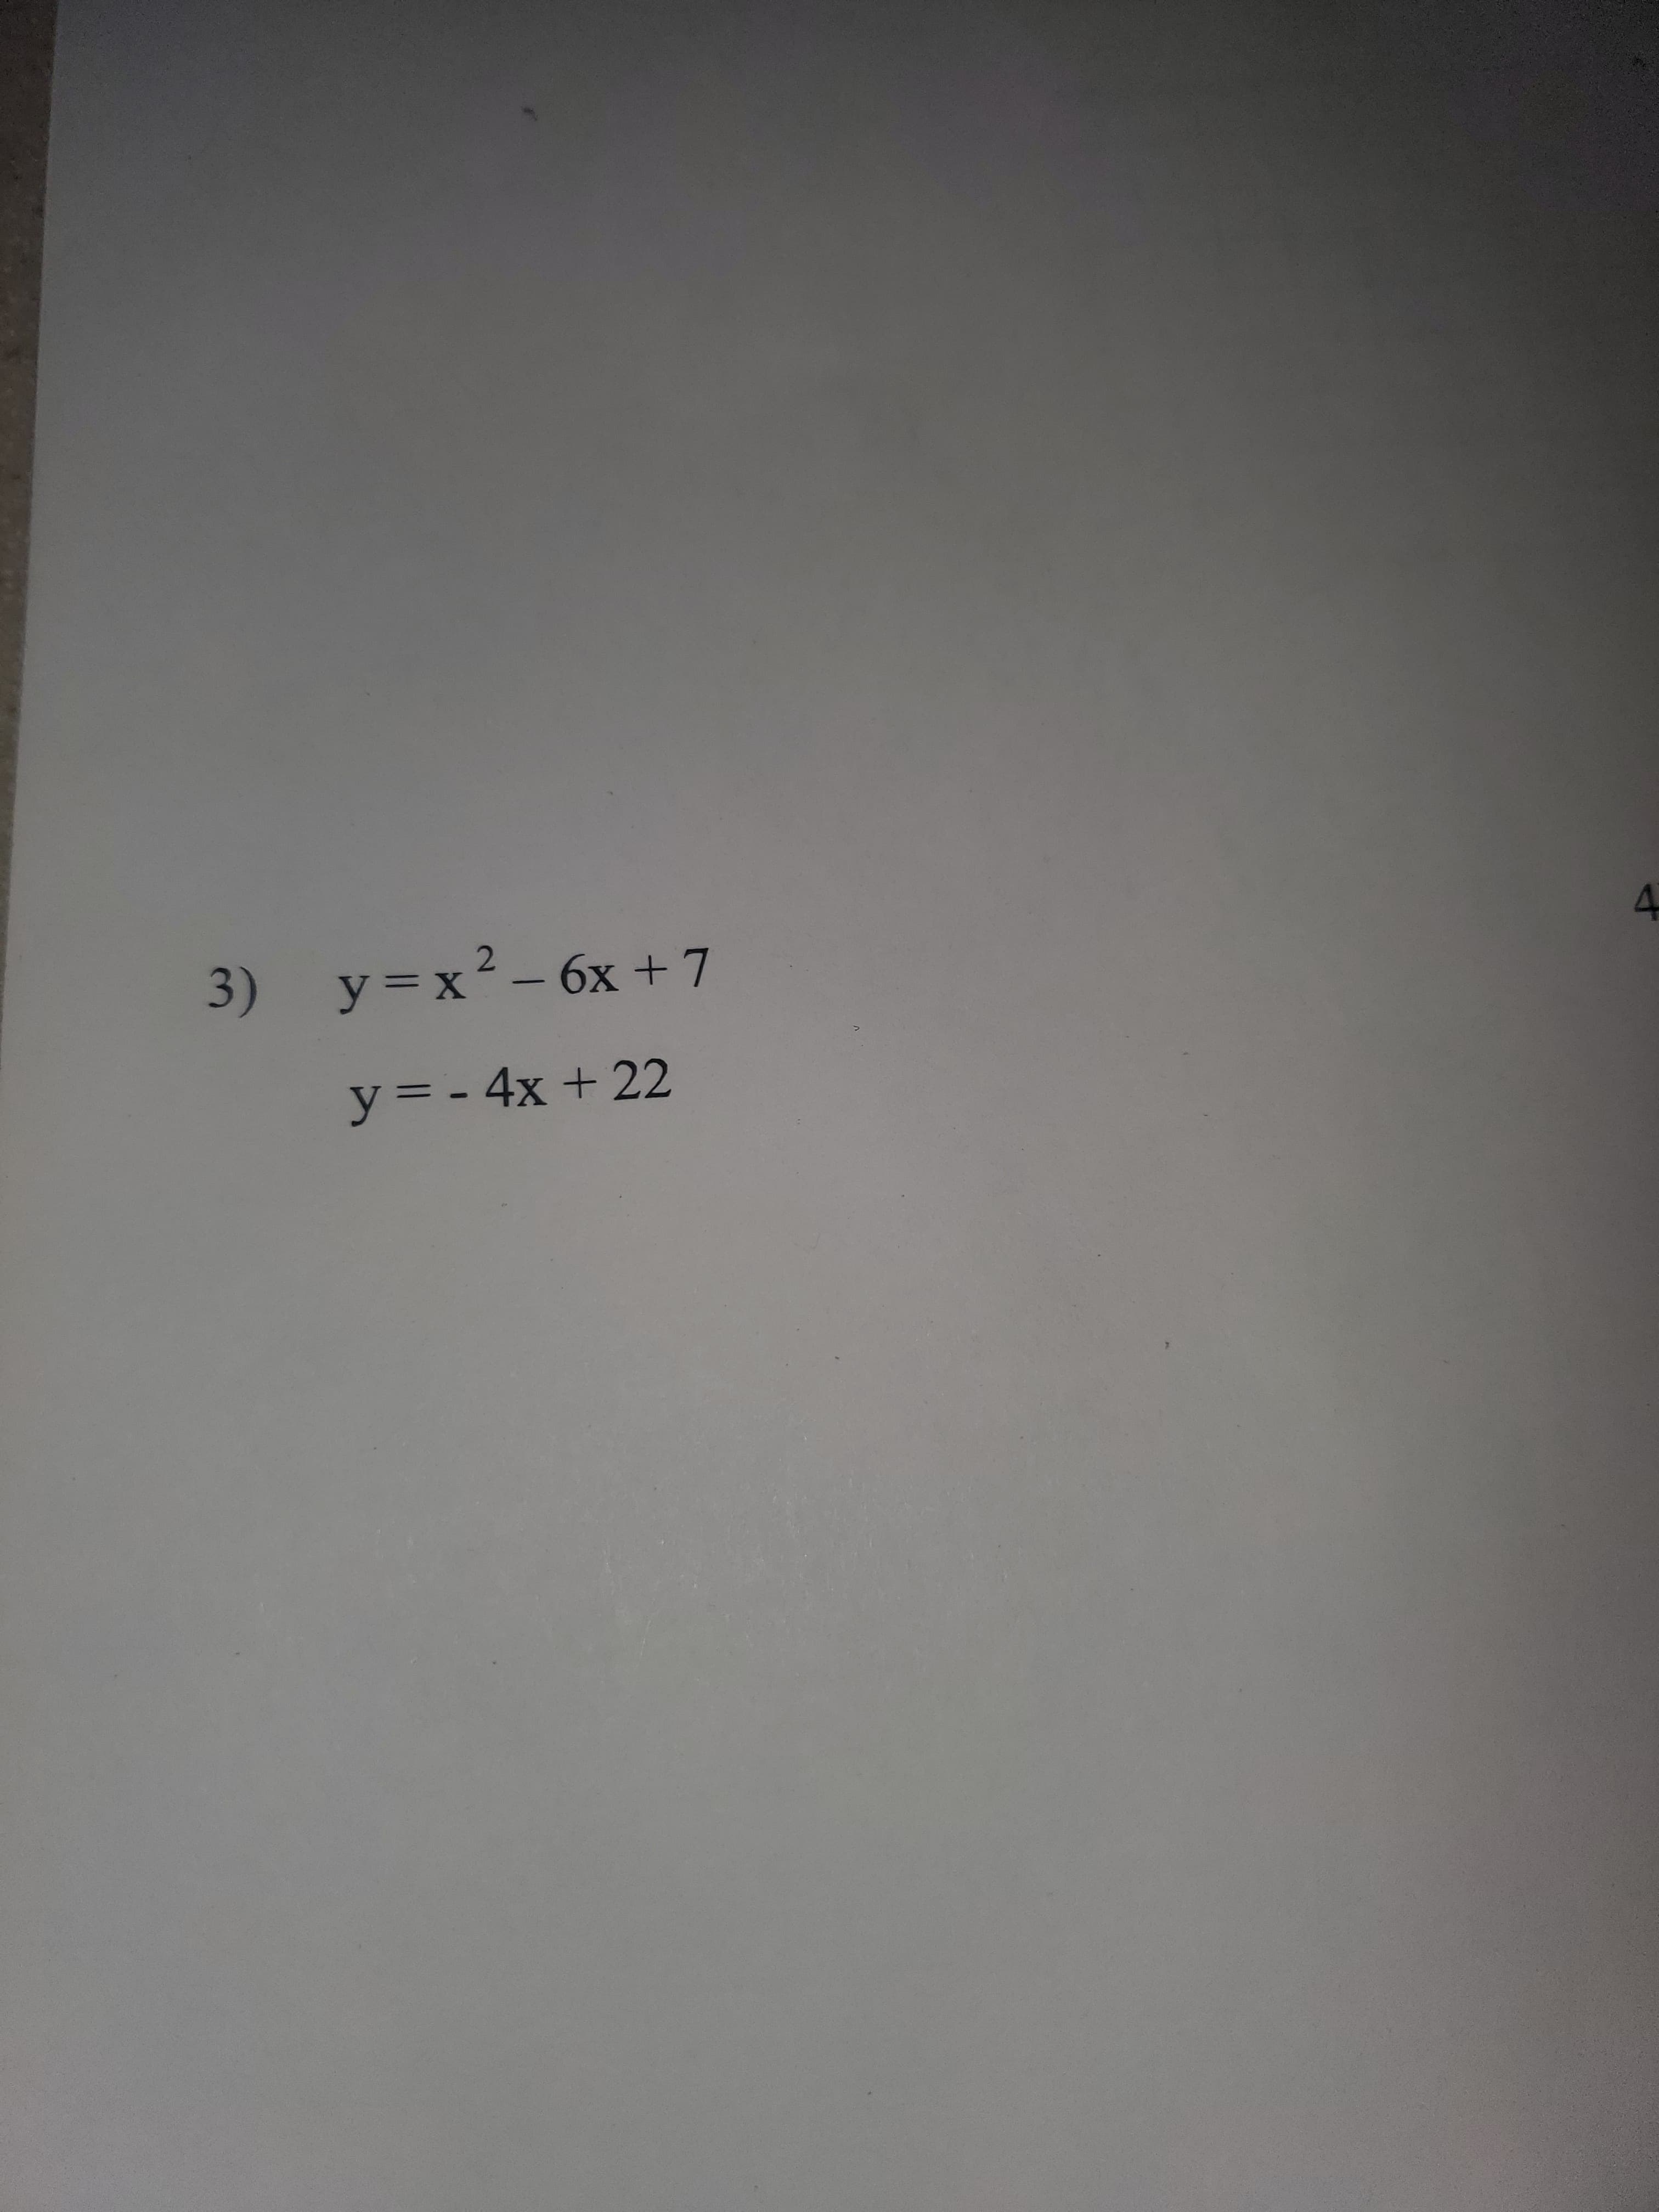 3) y=x²- 6x +7
4.
y= - 4x + 22
